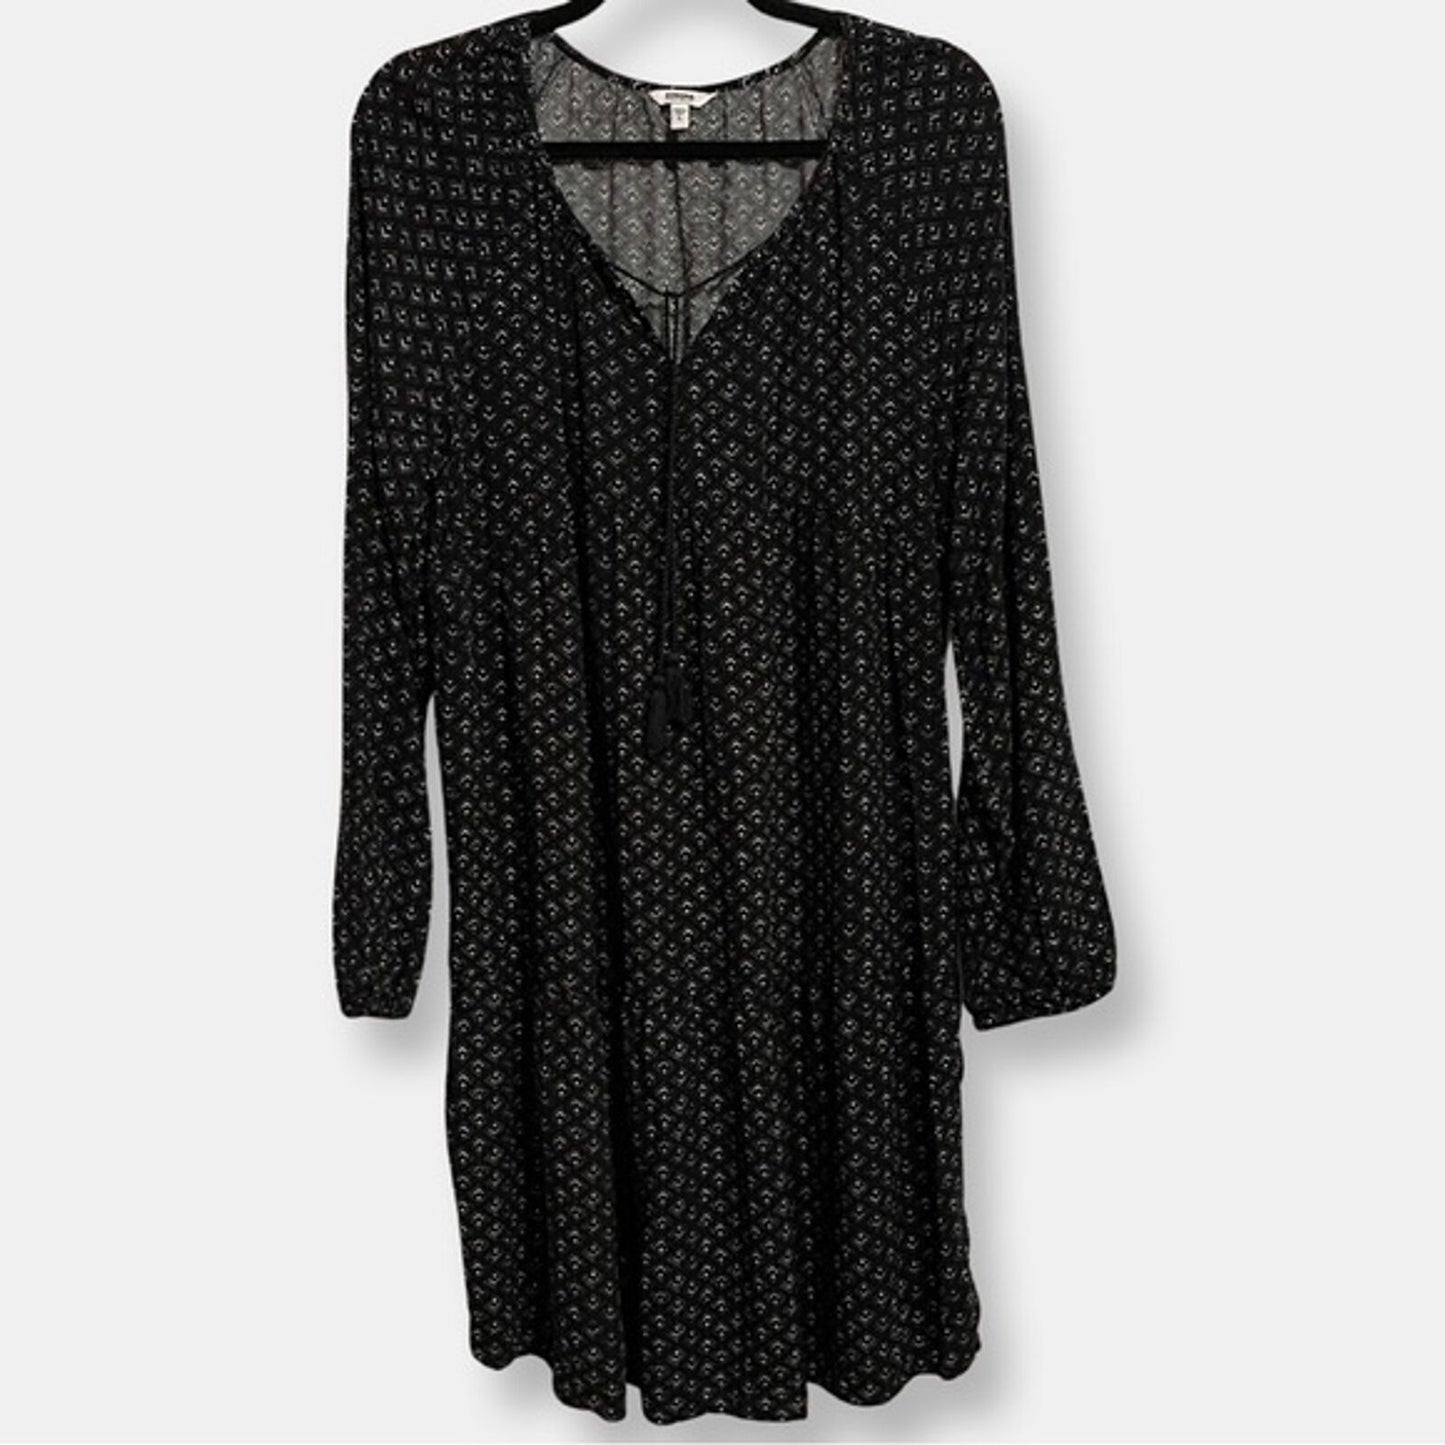 Long Sleeve Boho Peasant Dress Large Sonoma Goods For Life x Lauren Lane